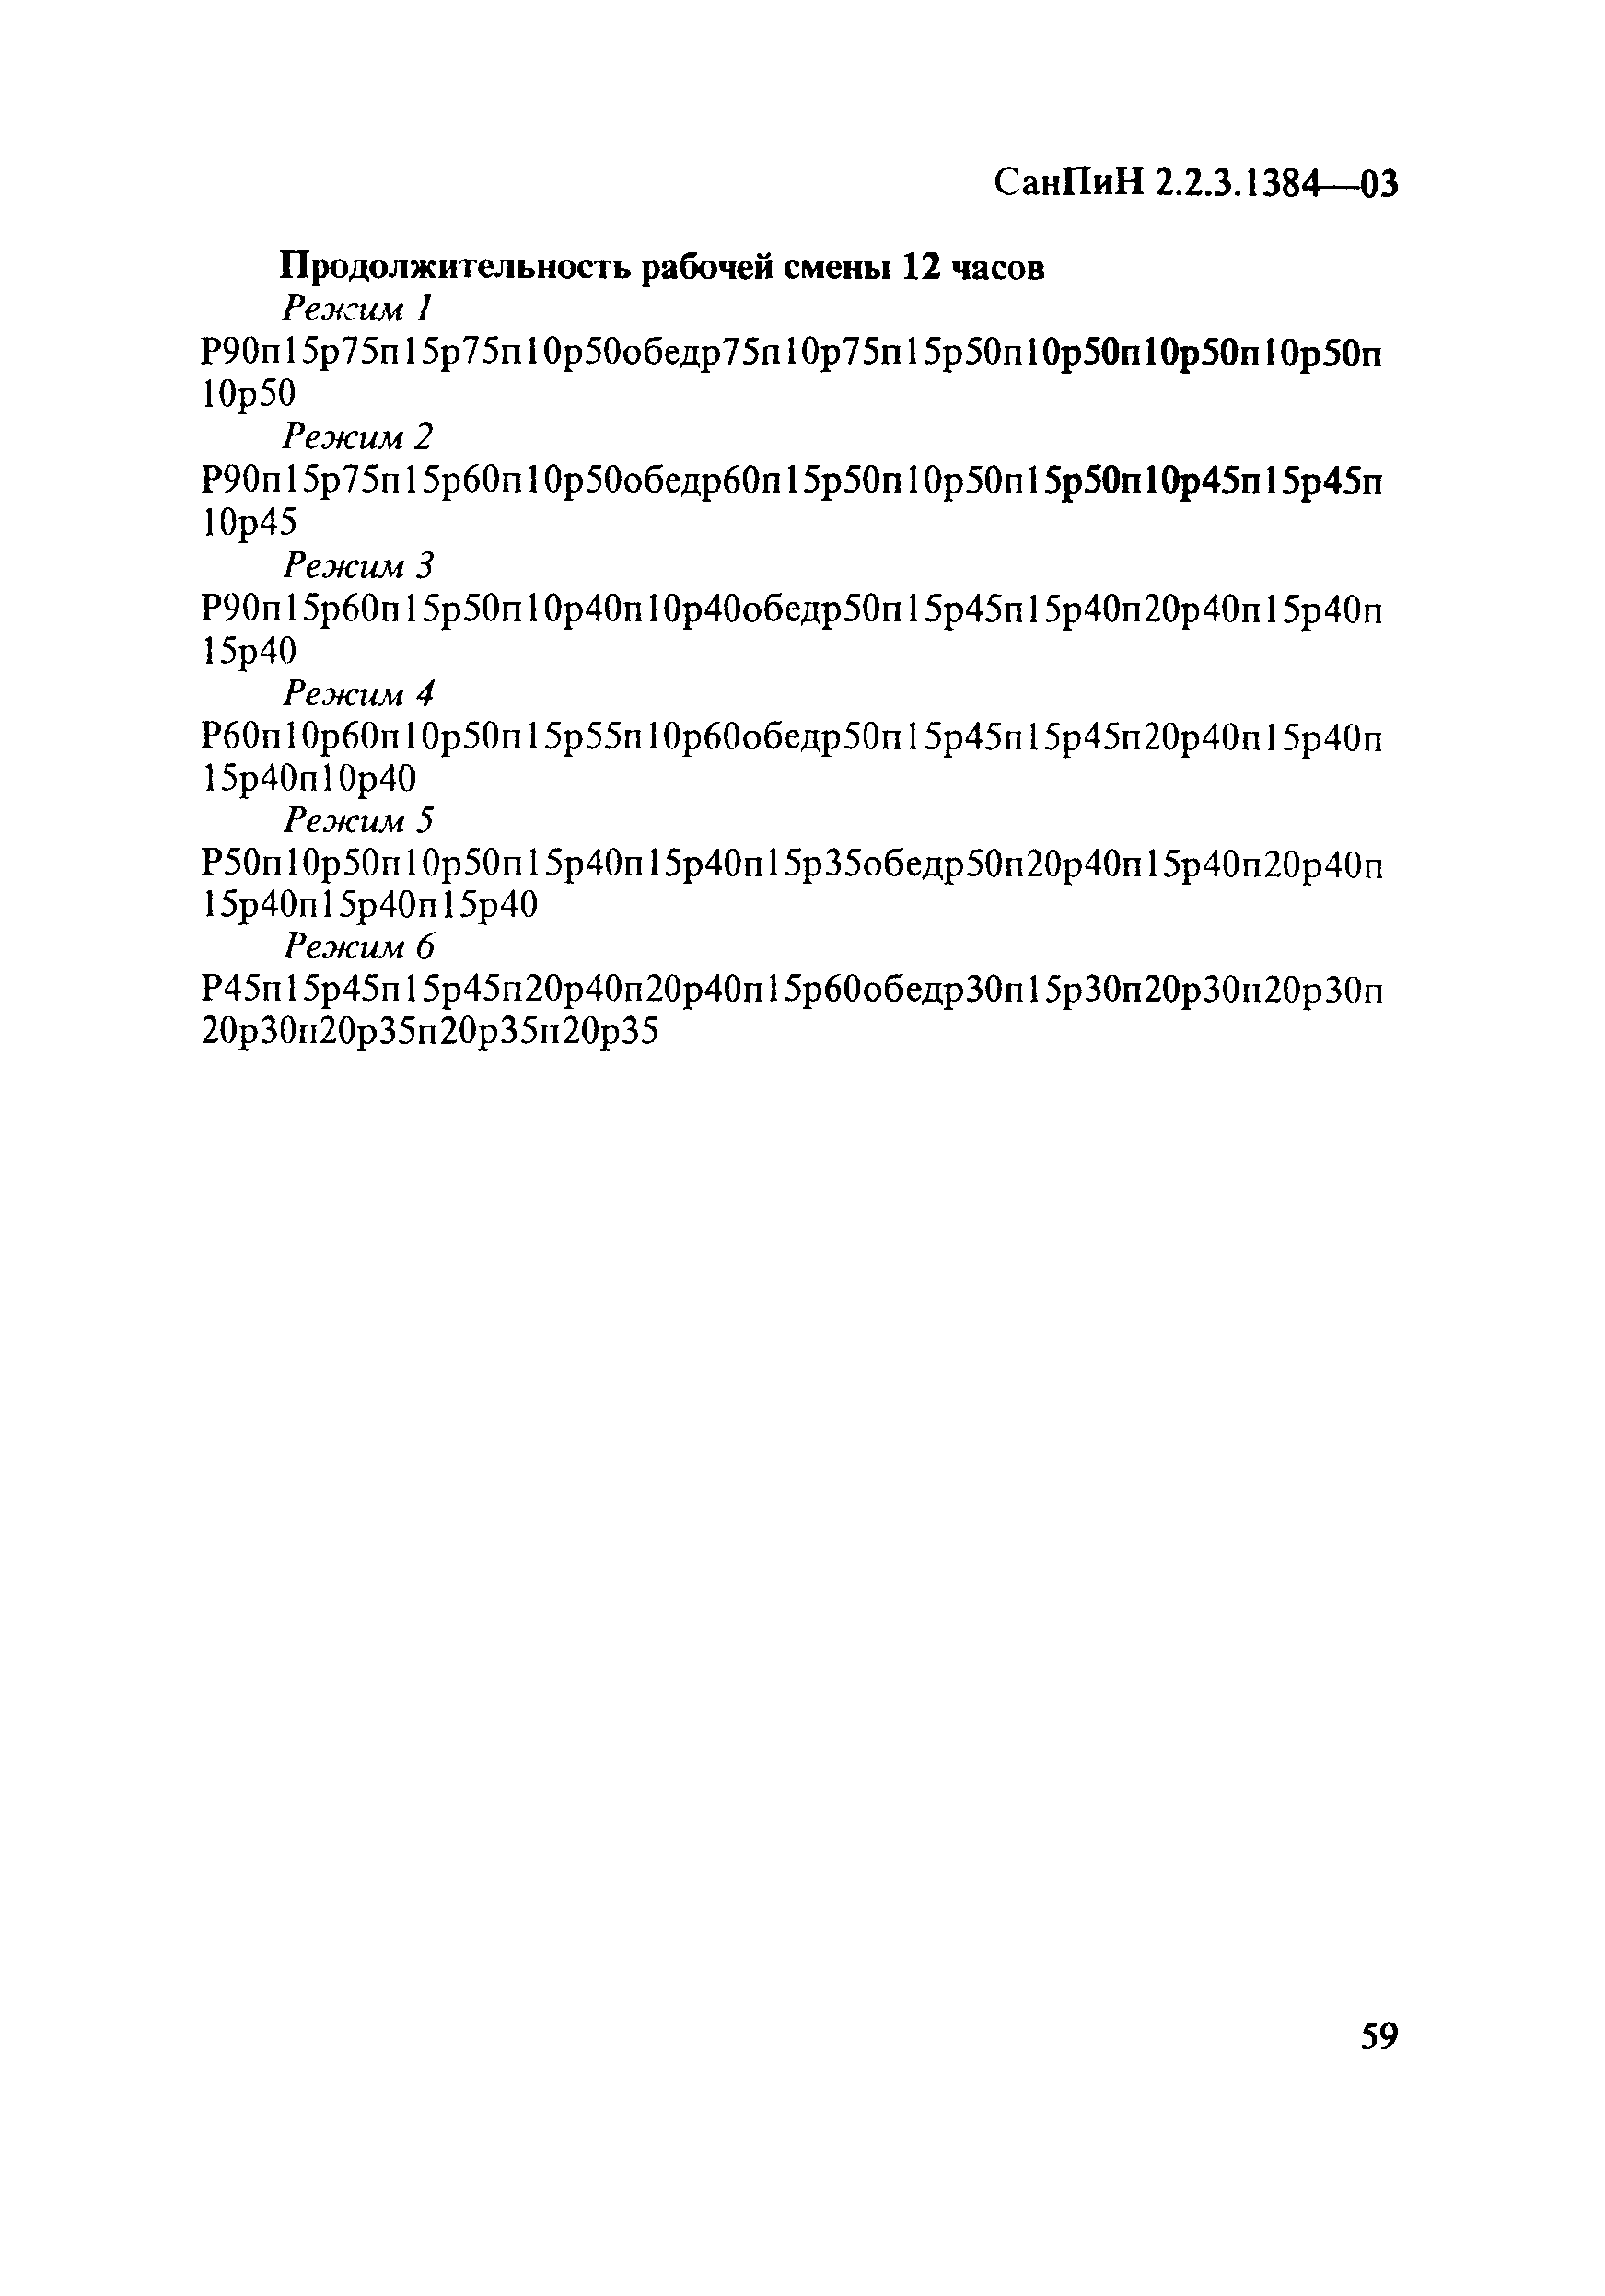 СанПиН 2.2.3.1384-03